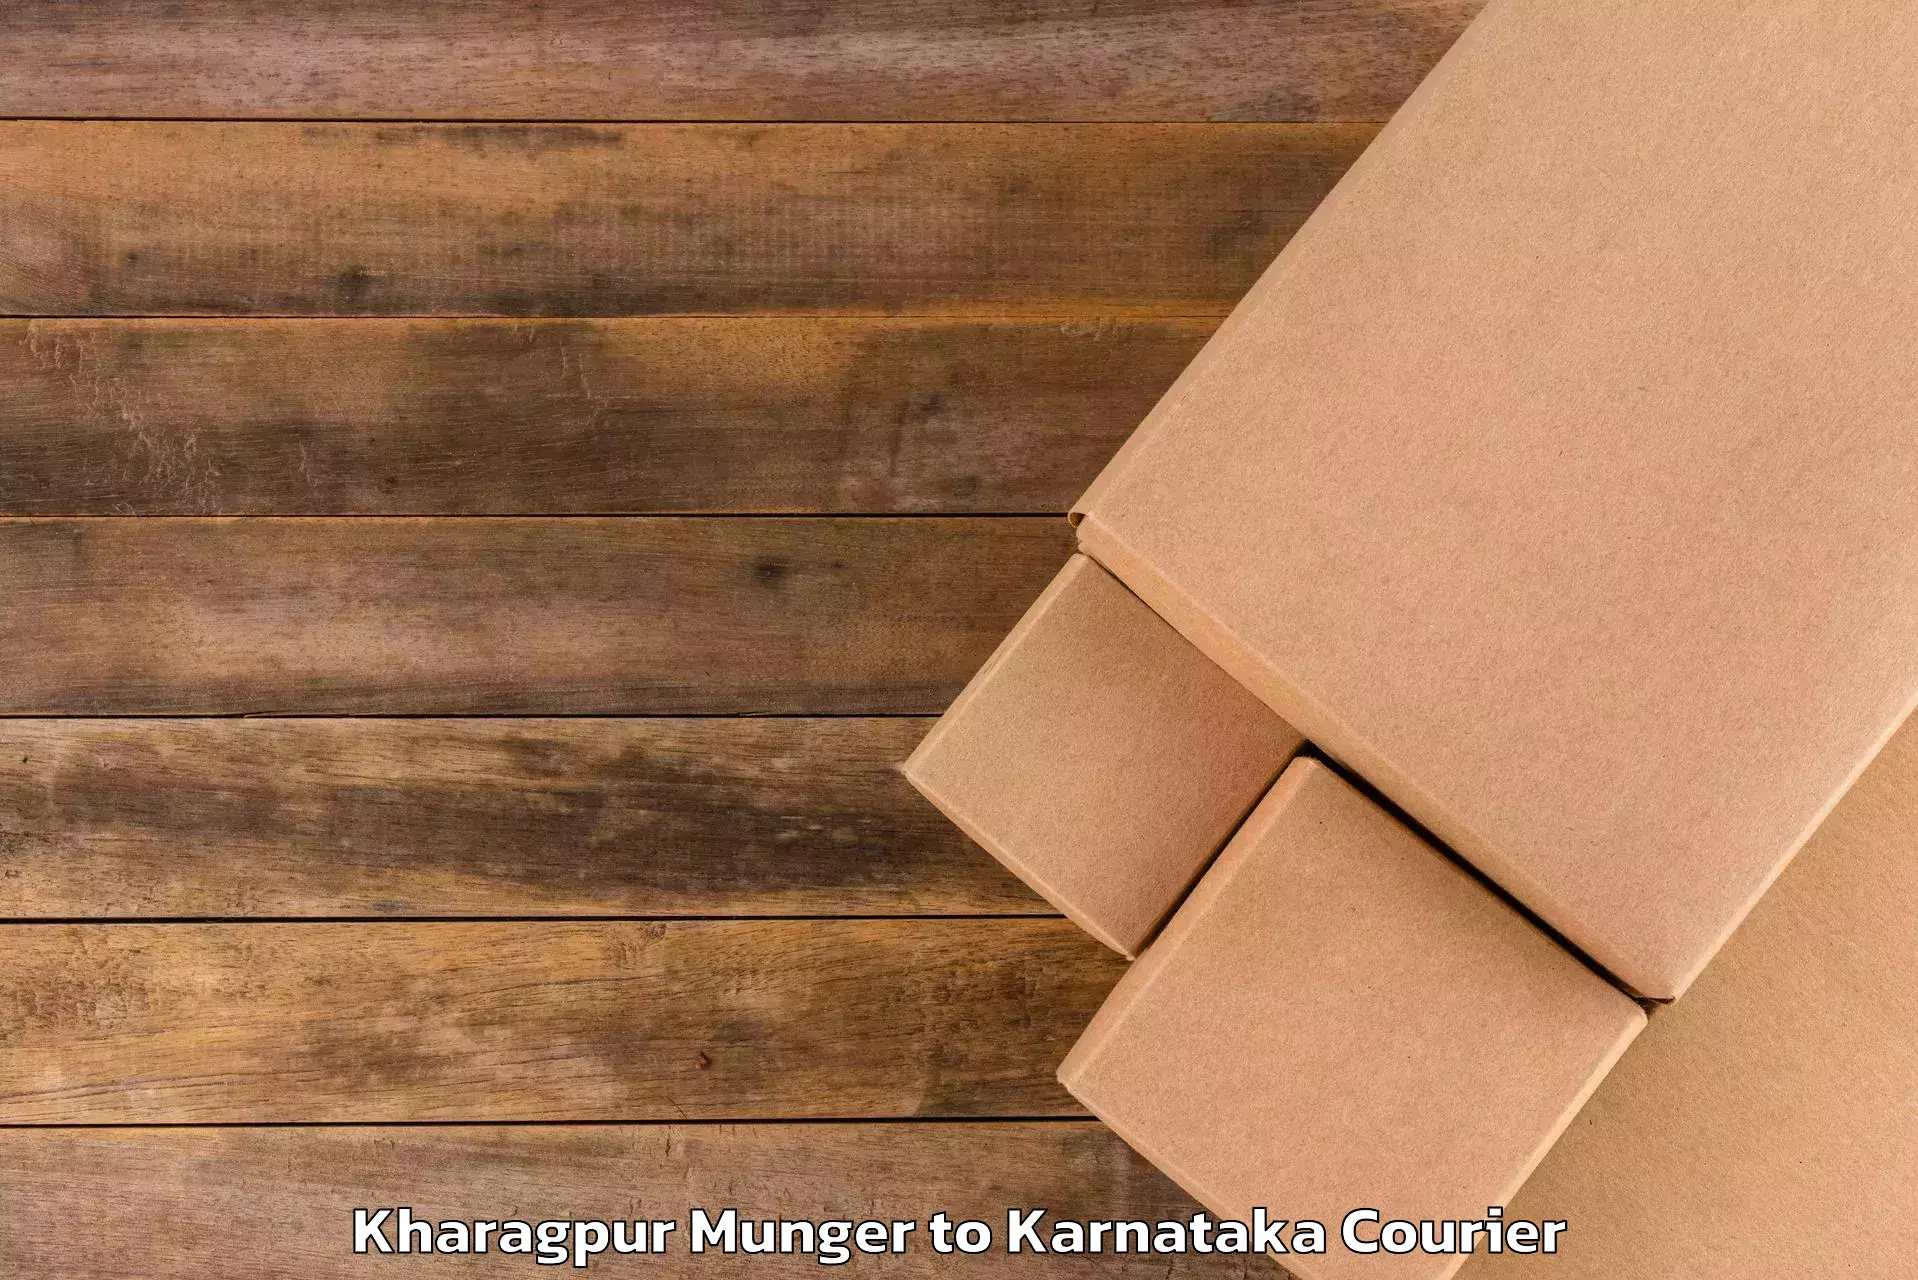 High-quality baggage shipment Kharagpur Munger to Ittigi